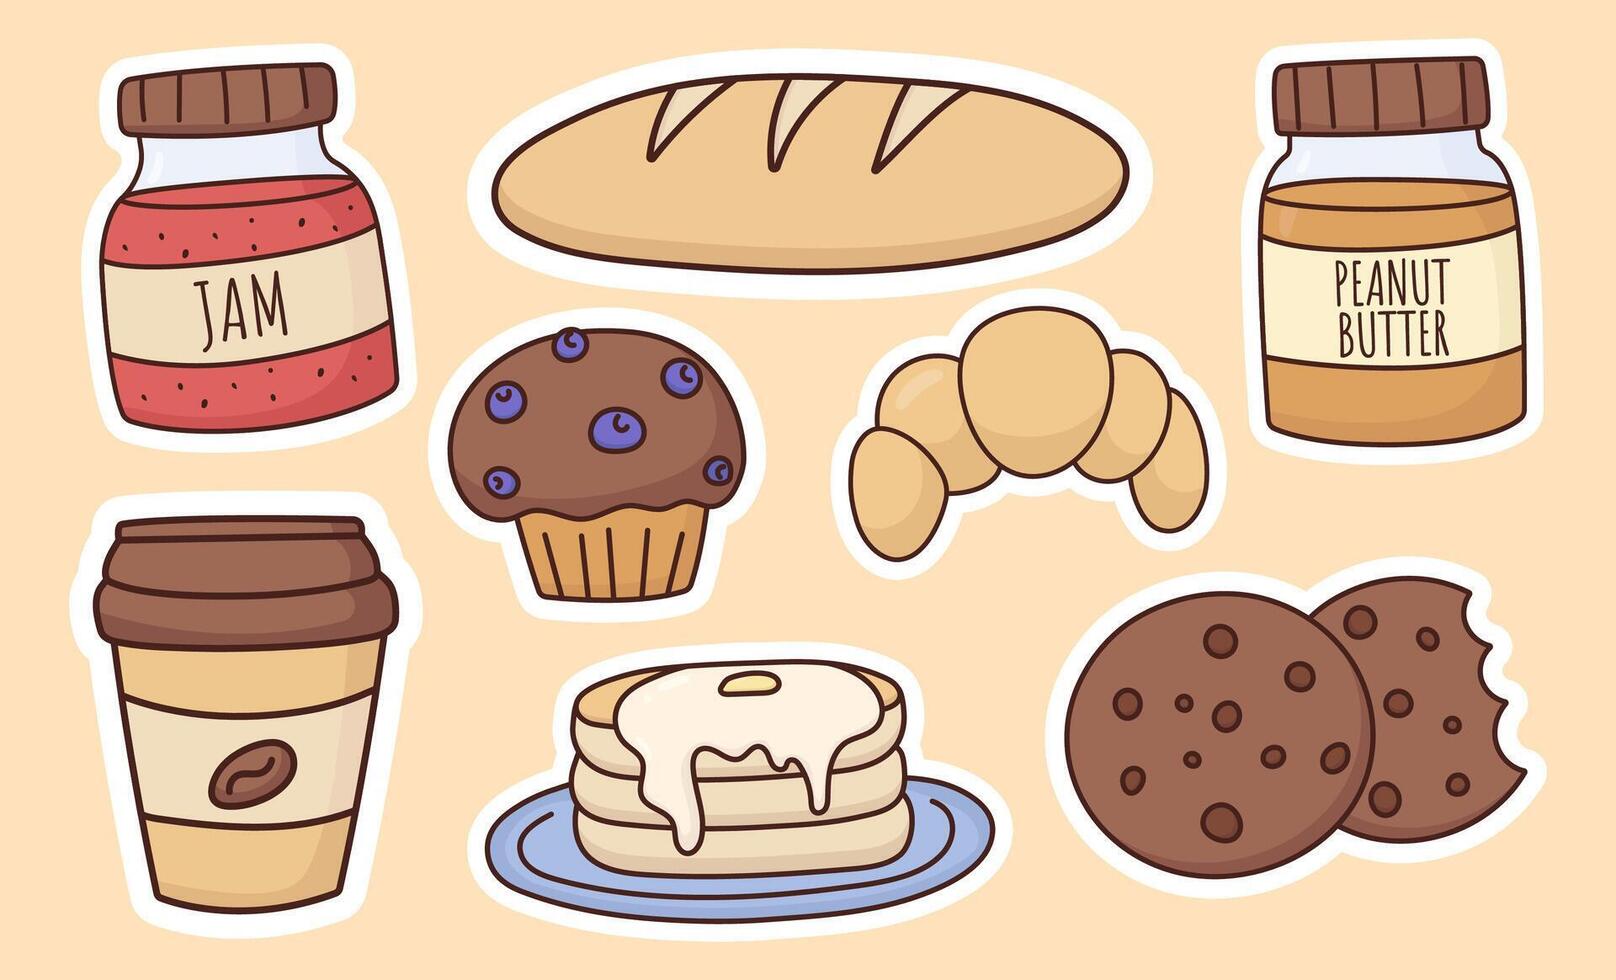 ontbijt sticker set, divers voedsel, jam, koffie, muffin met bessen, pannekoeken, croissant, brood, koekje, pinda boter, tussendoortje, lunch, illustratie vector